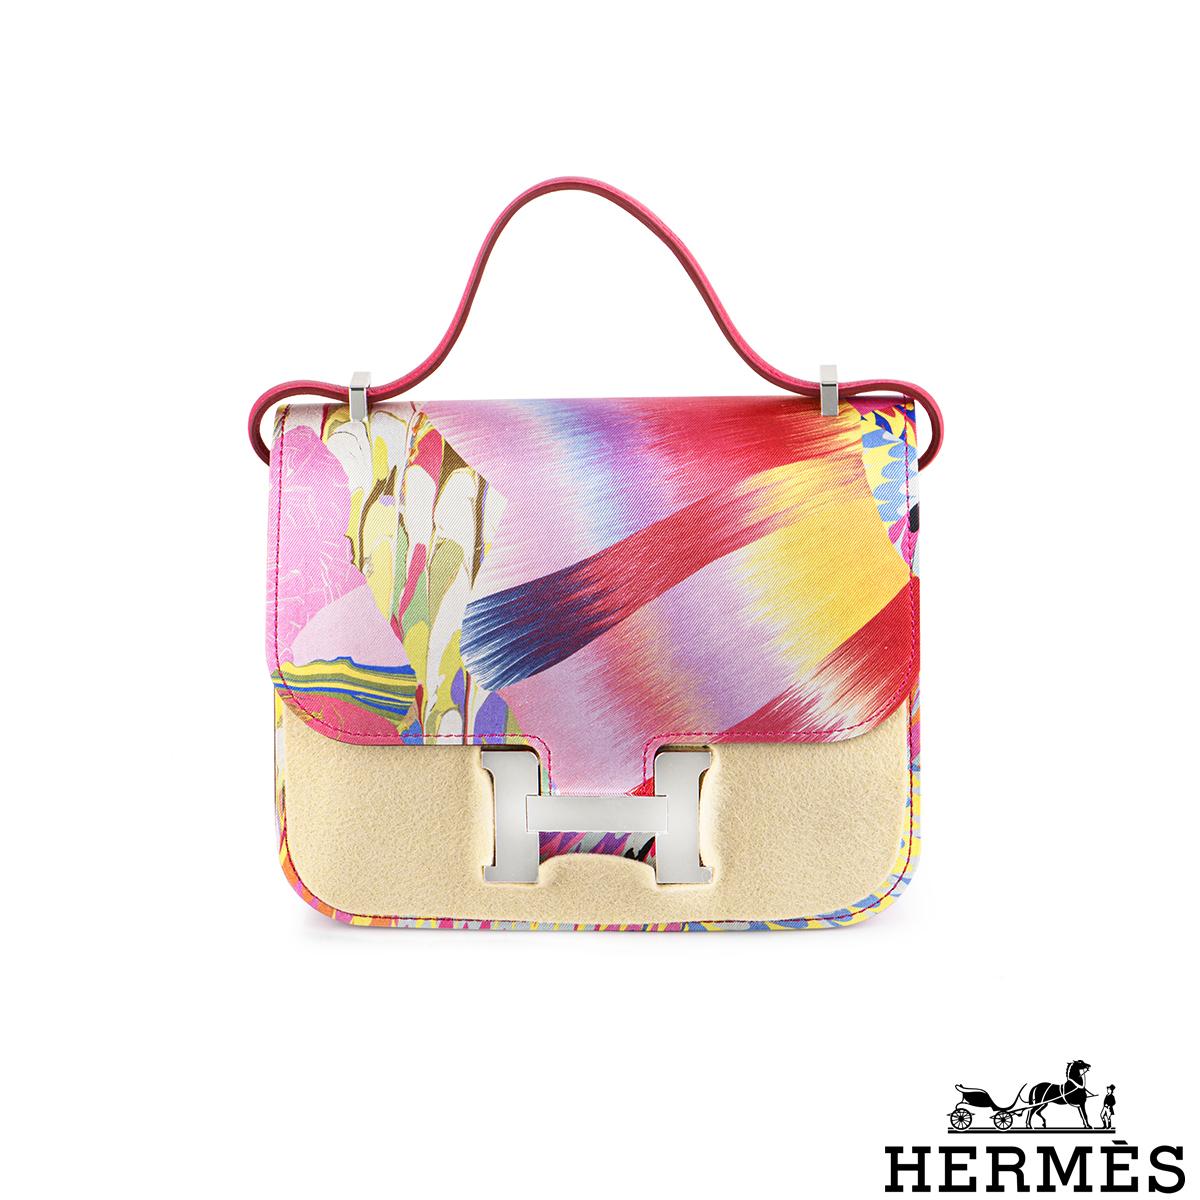 Eine Hermès Constance 18cm Tasche in limitierter Auflage. Die Tasche zeichnet sich durch eine seltene Technik aus, die außergewöhnliche Farben im Seidenmuster Orbis erzeugt. Das Äußere der Constance zeichnet sich durch farblich abgestimmte Nähte,